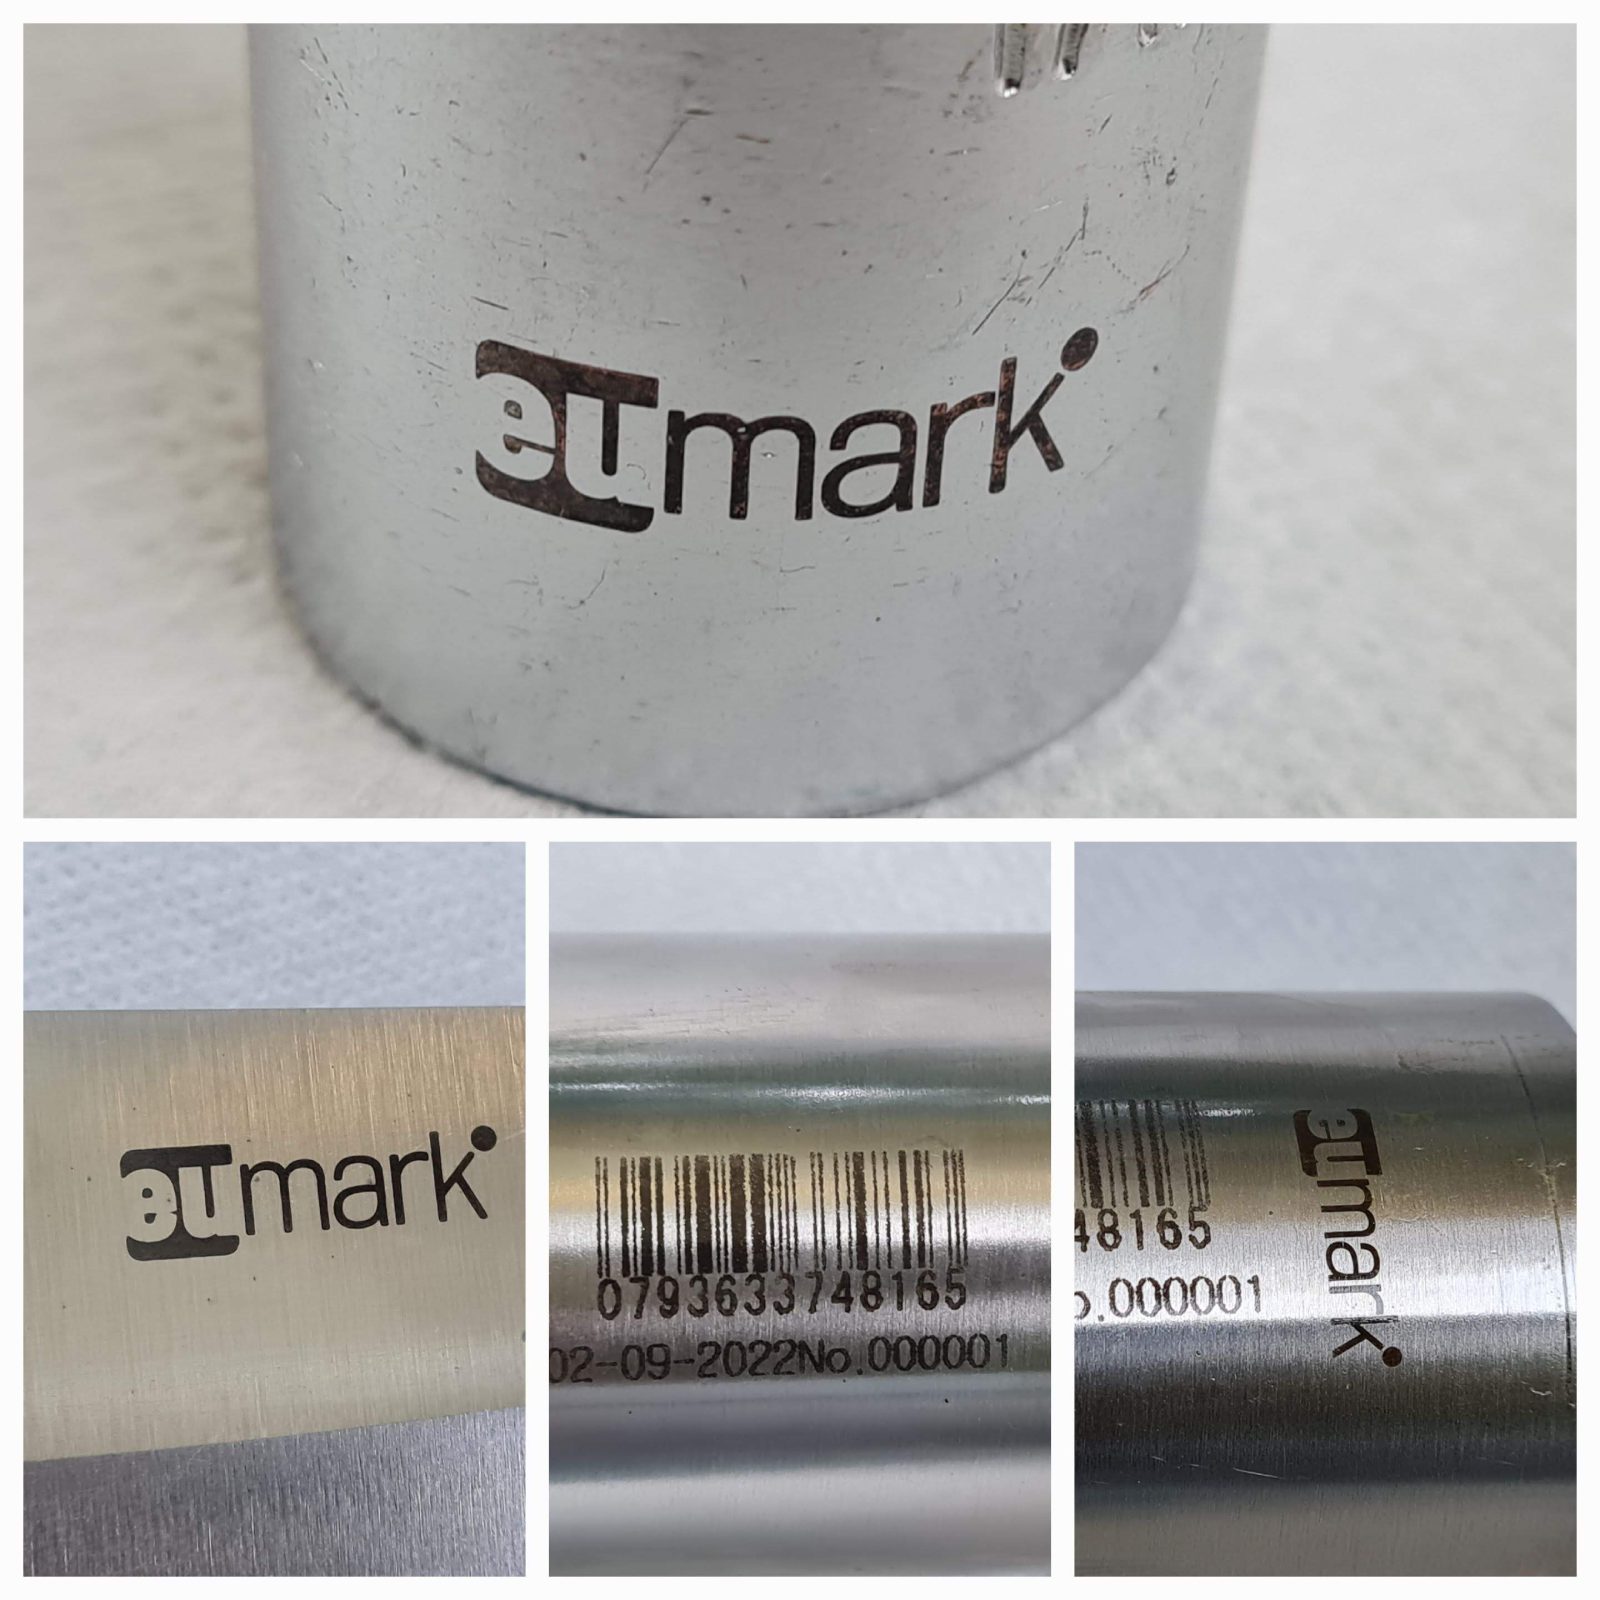 Electro Chemical Marking and Etching Machine EUmark Set 02 – Oz Robotics